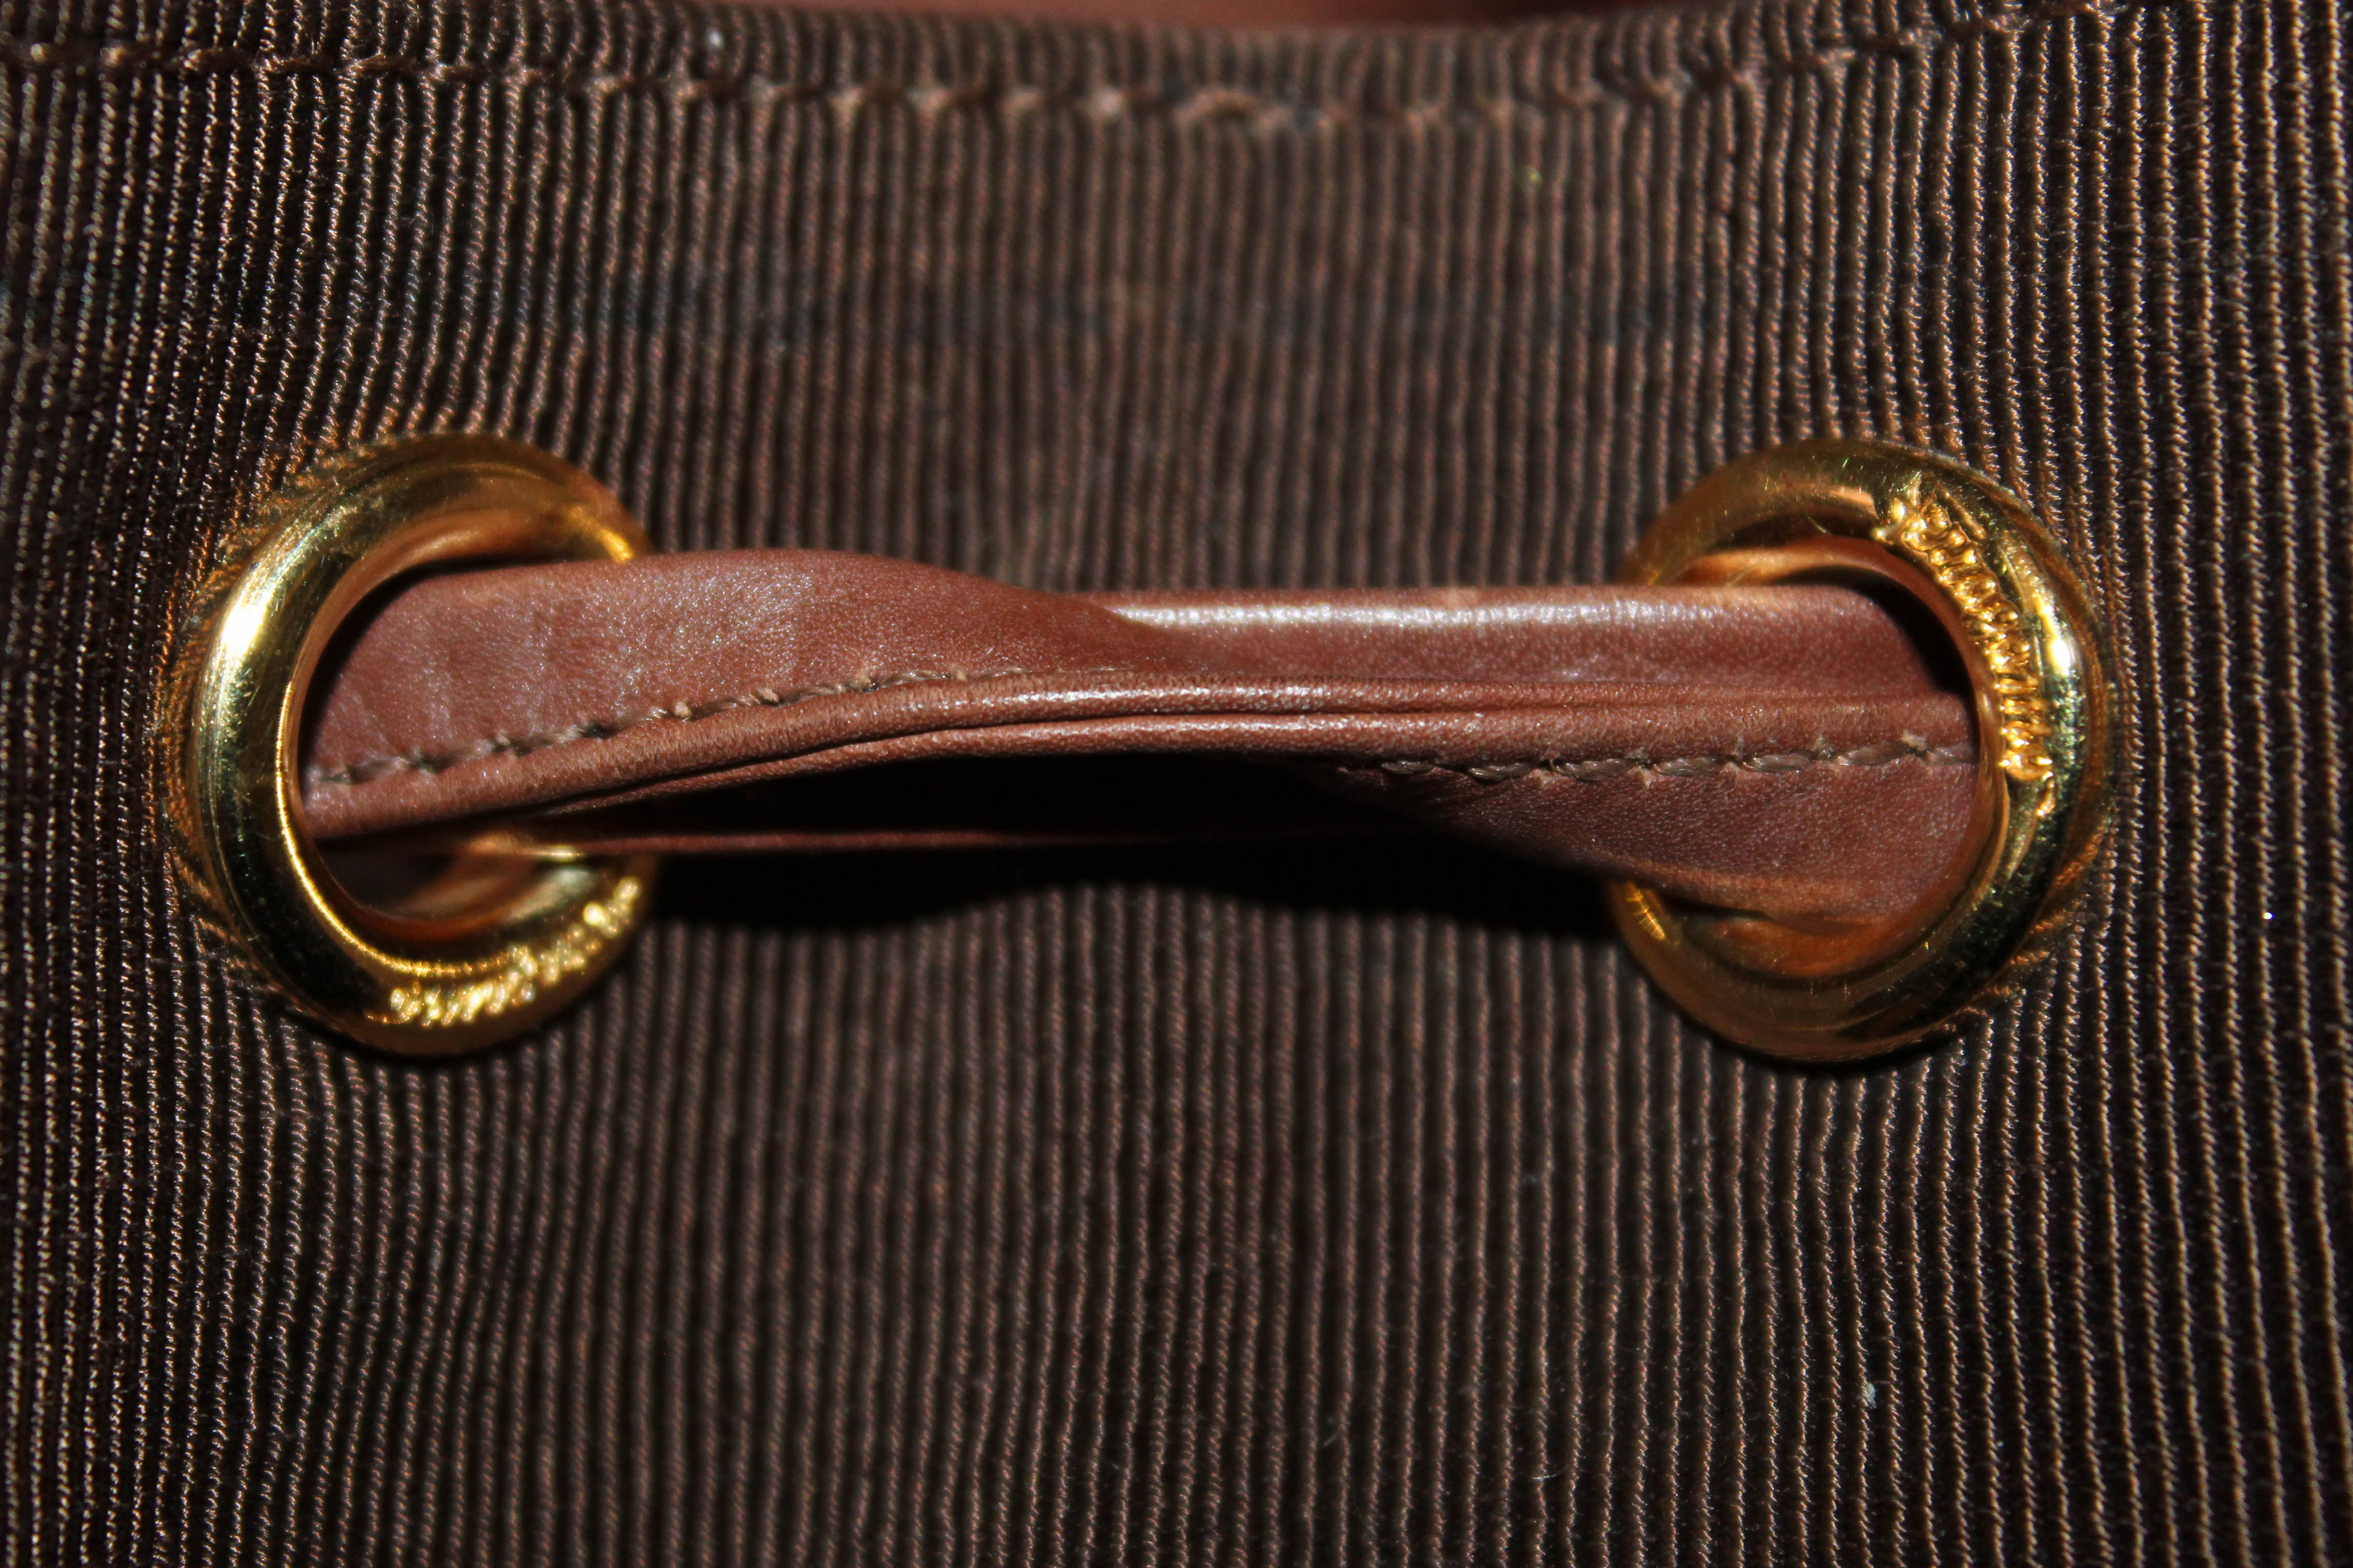 LONGCHAMP Brown Leather Vintage Drawstring Bucket Shoulder Bag 